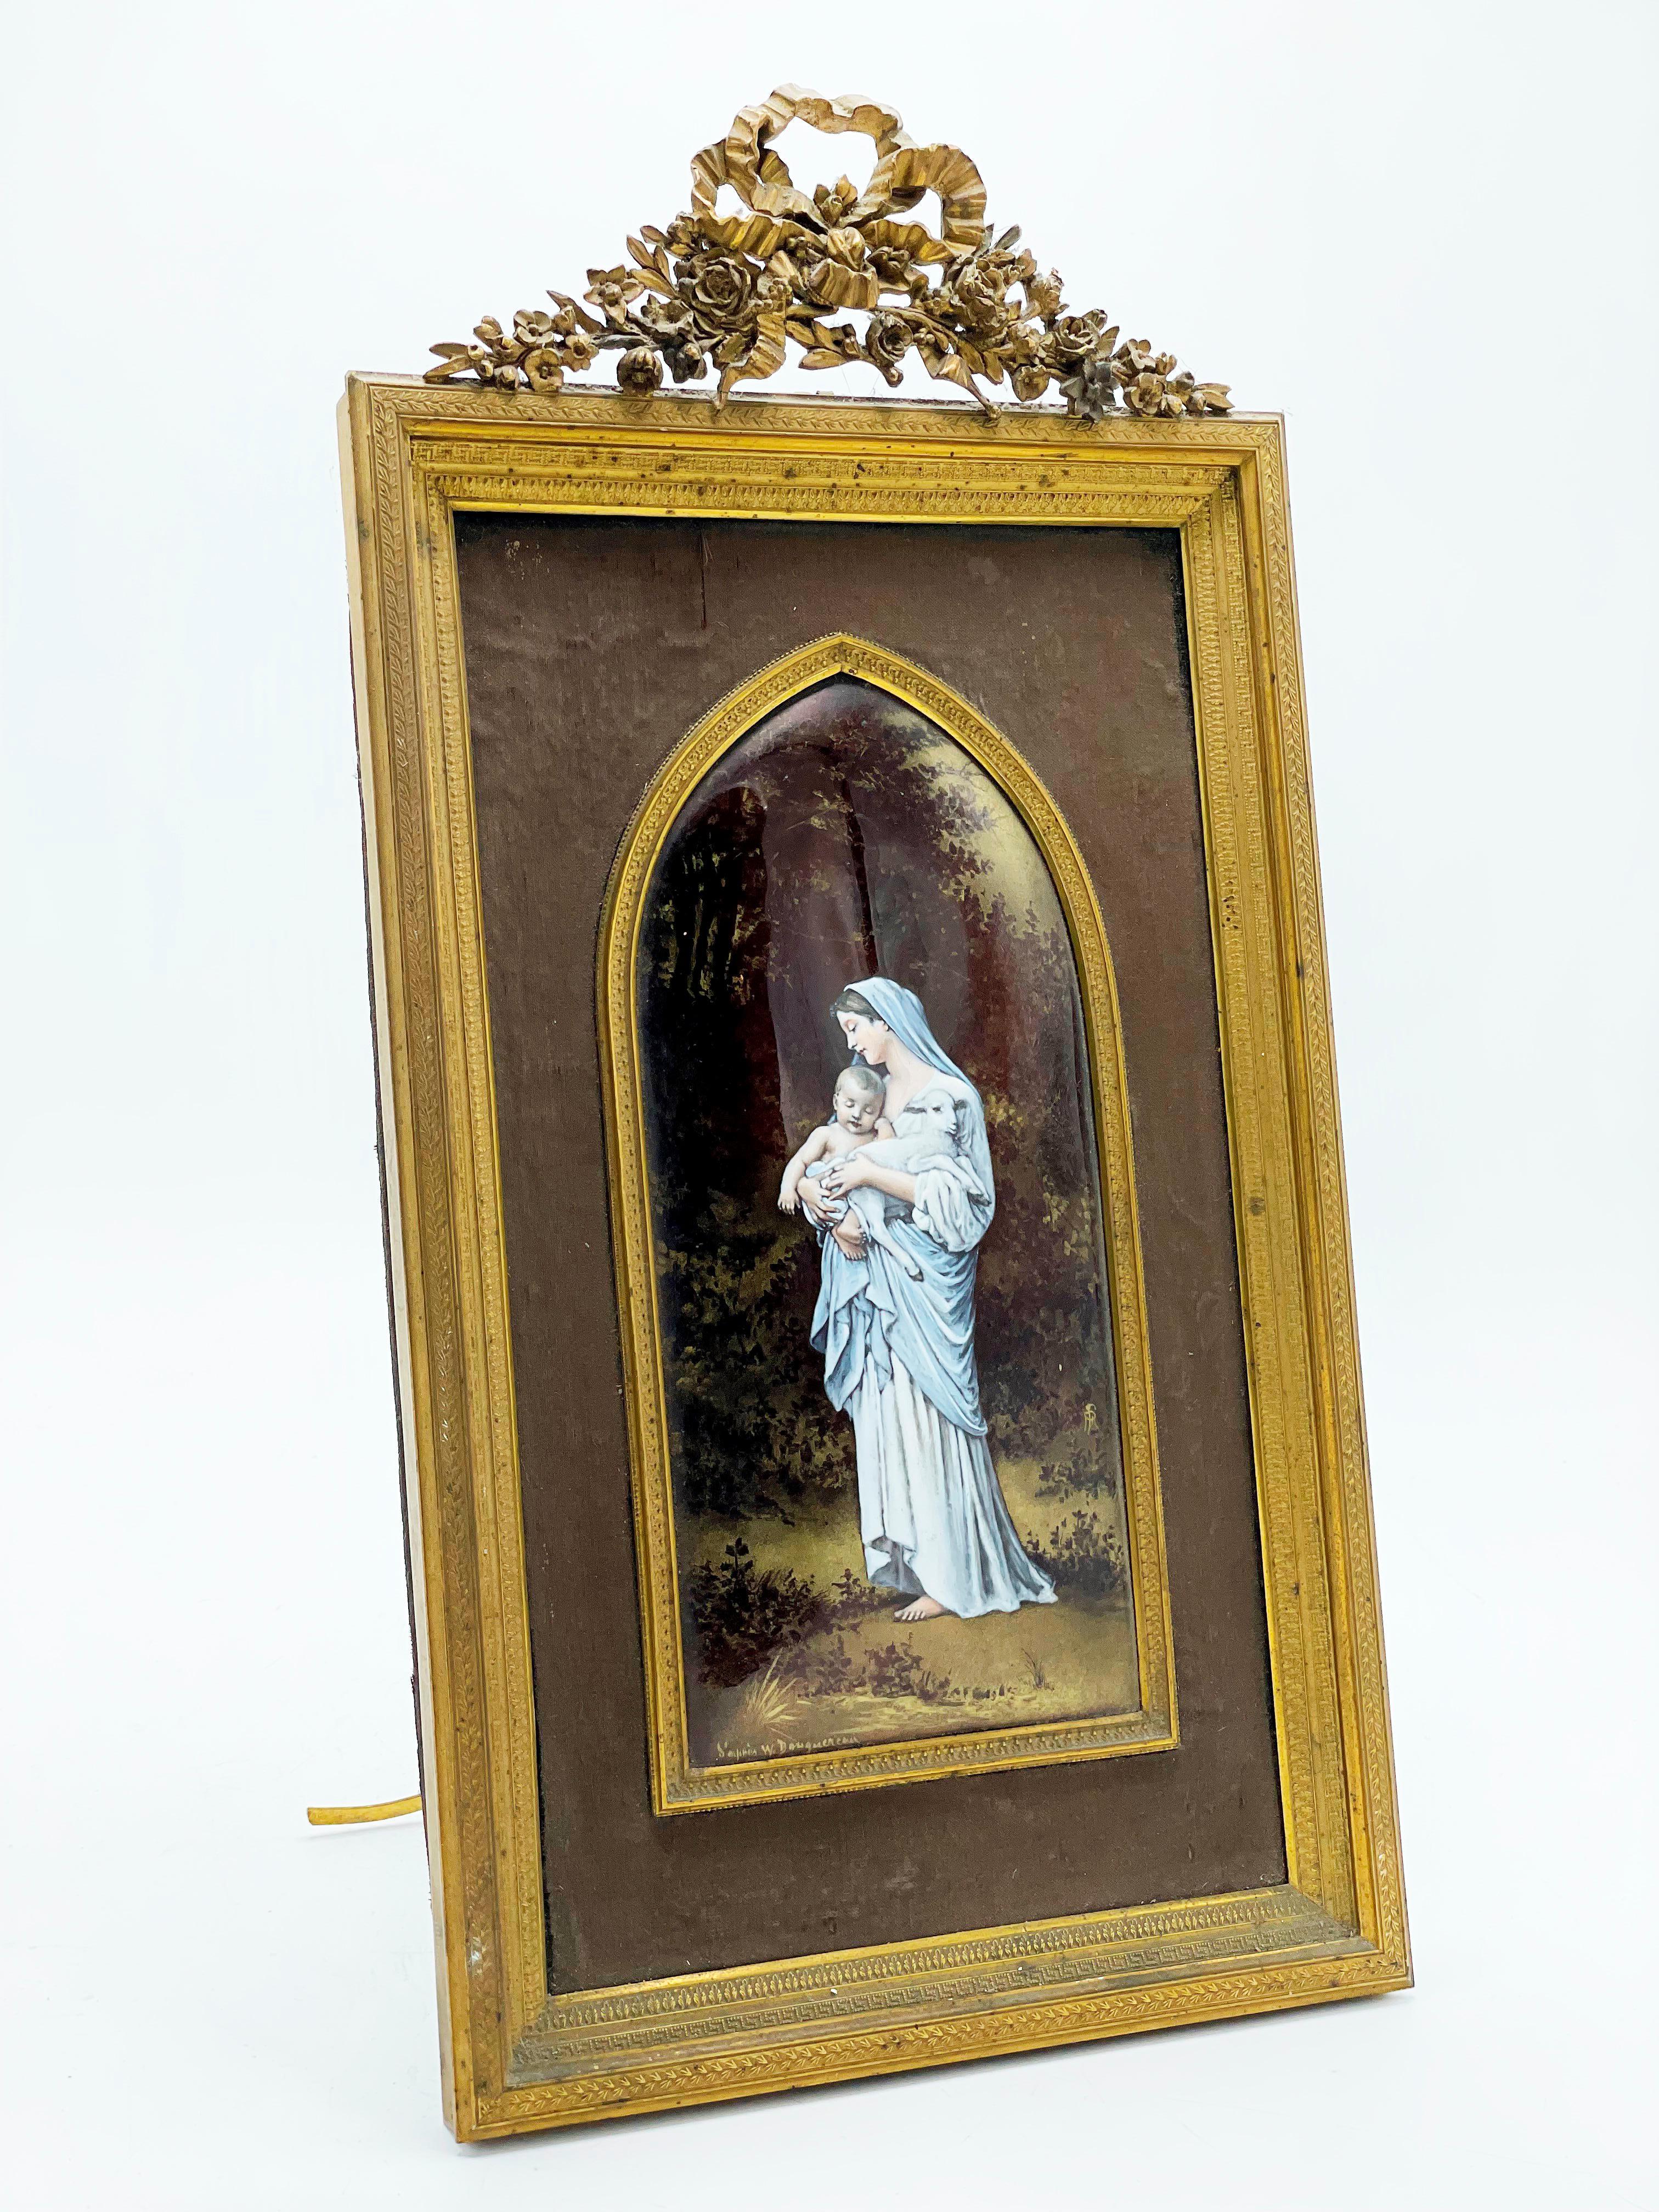 Virgen of the Lamb, French Limoges Enamel Portrait Plaque 1910s

